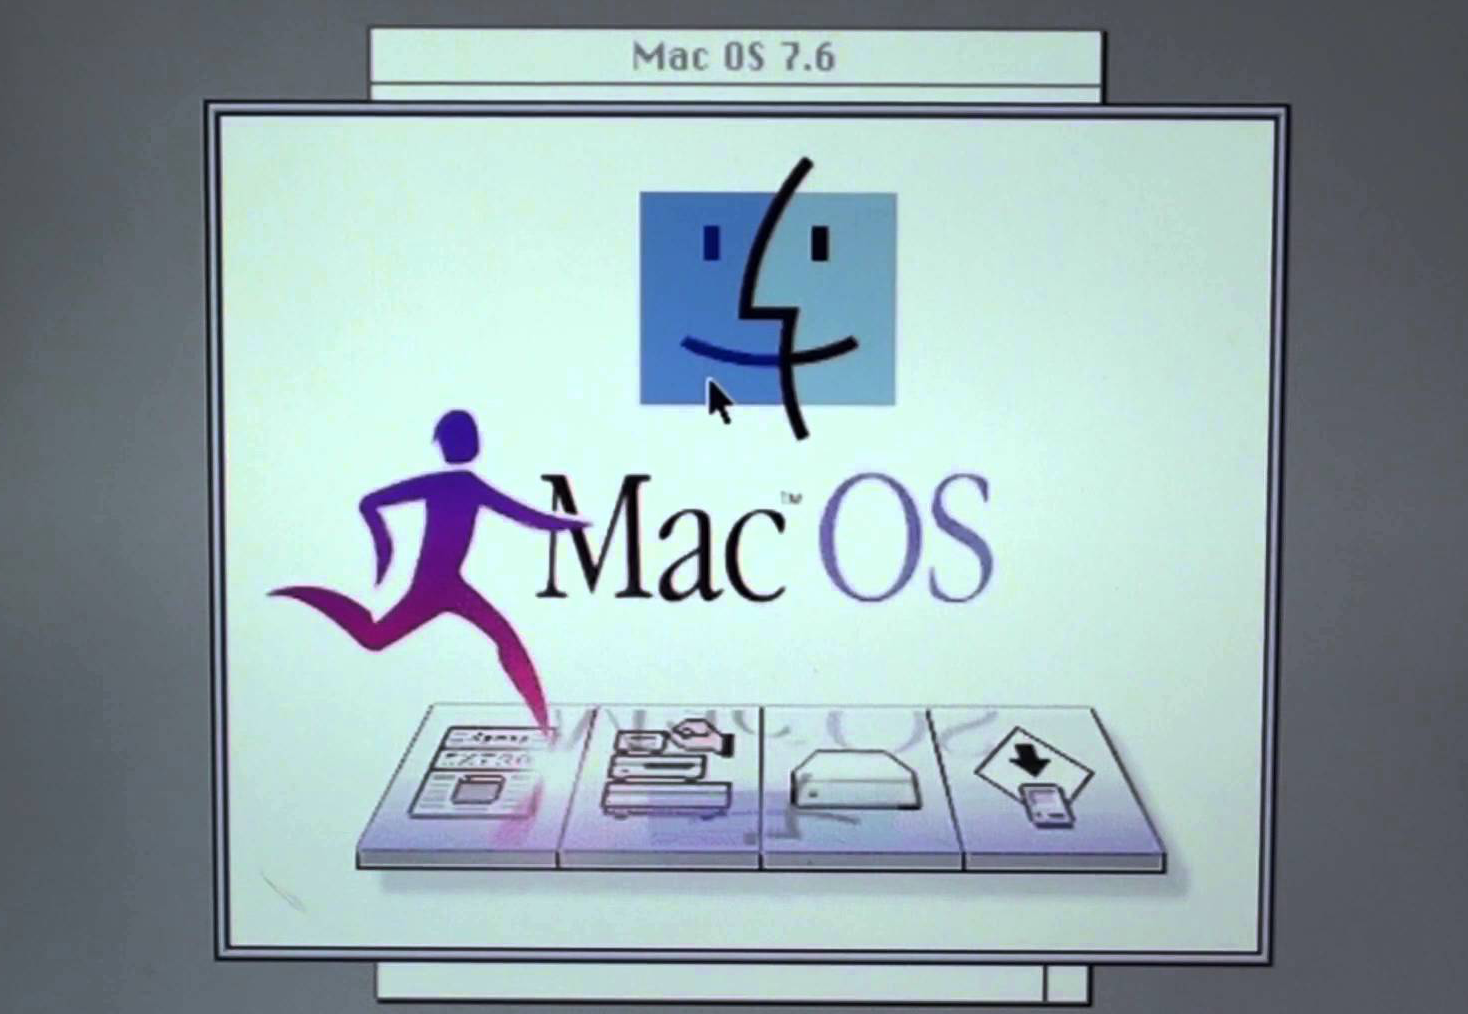 Mac OS 7.6 Installer